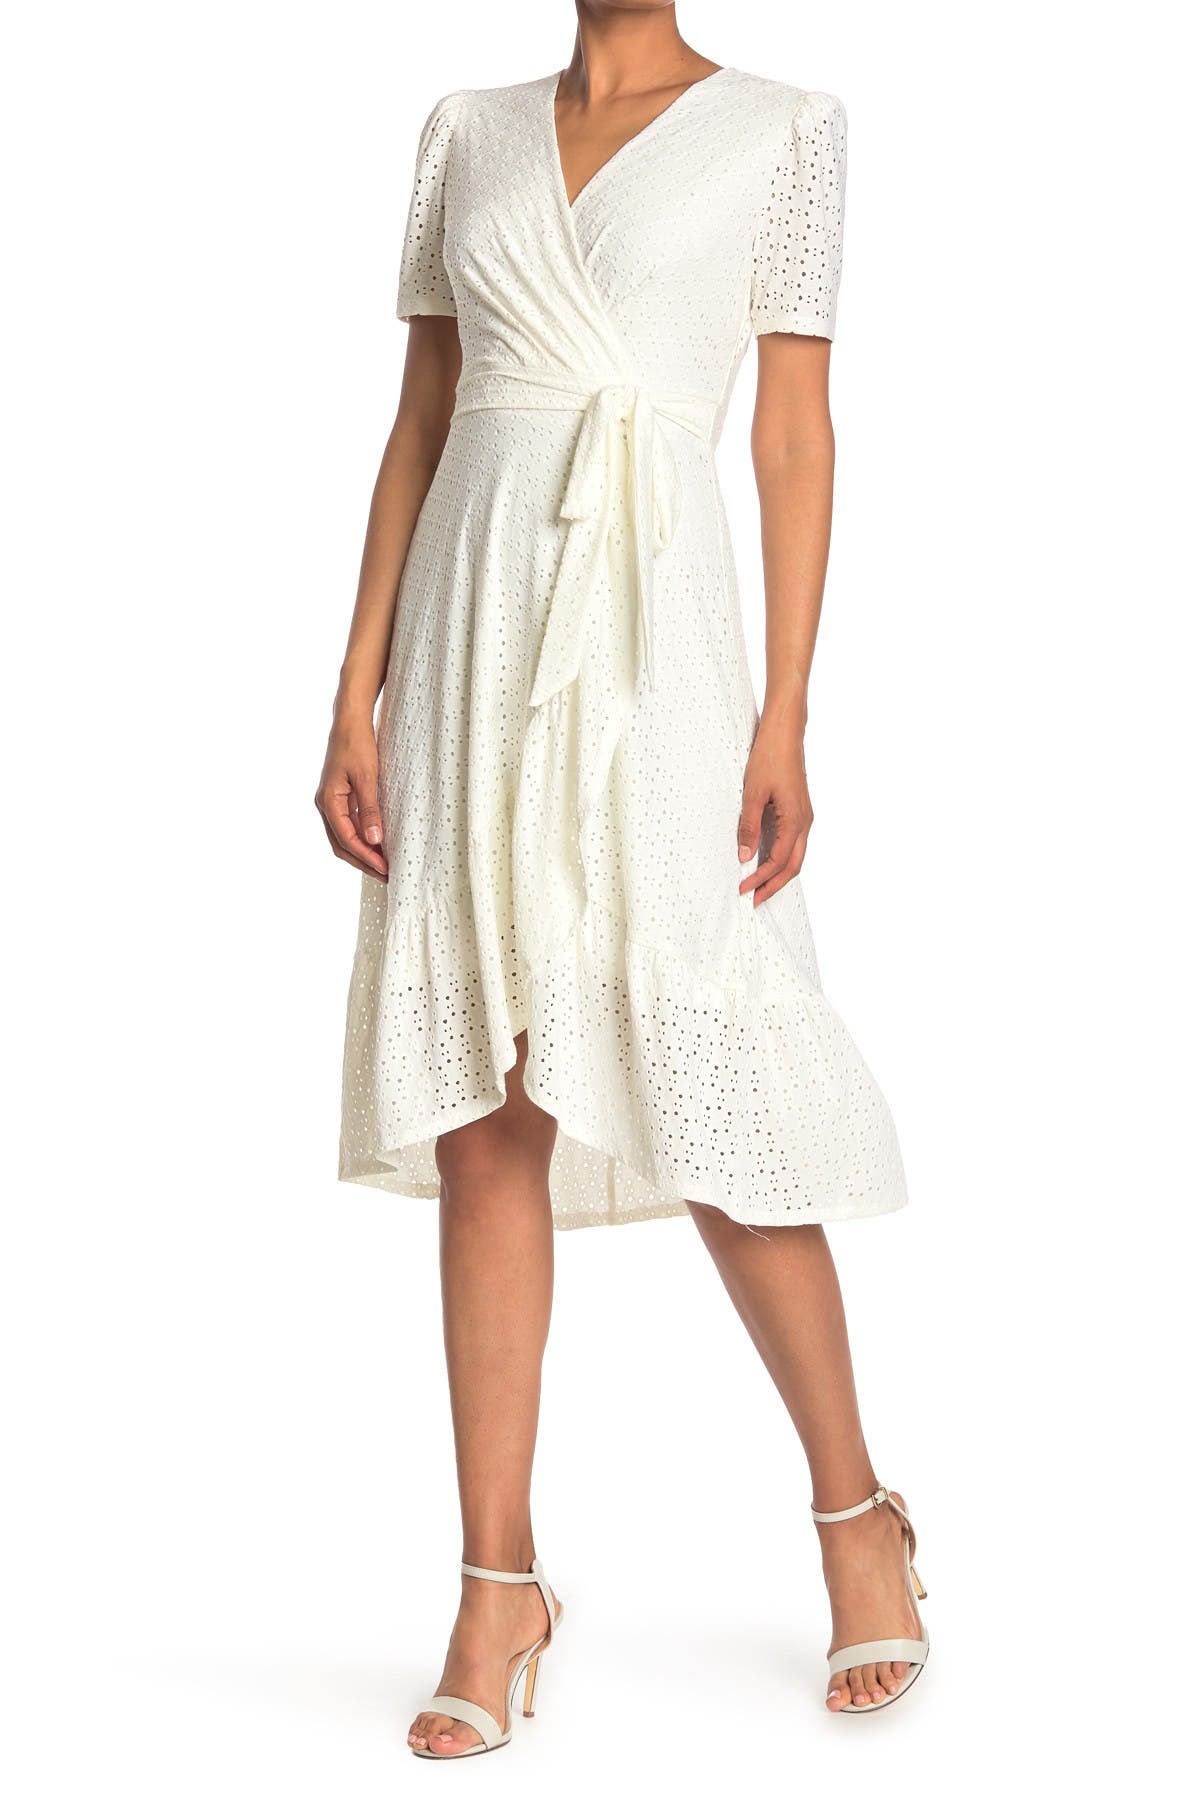 White Wrap Dresses | Nordstrom Rack